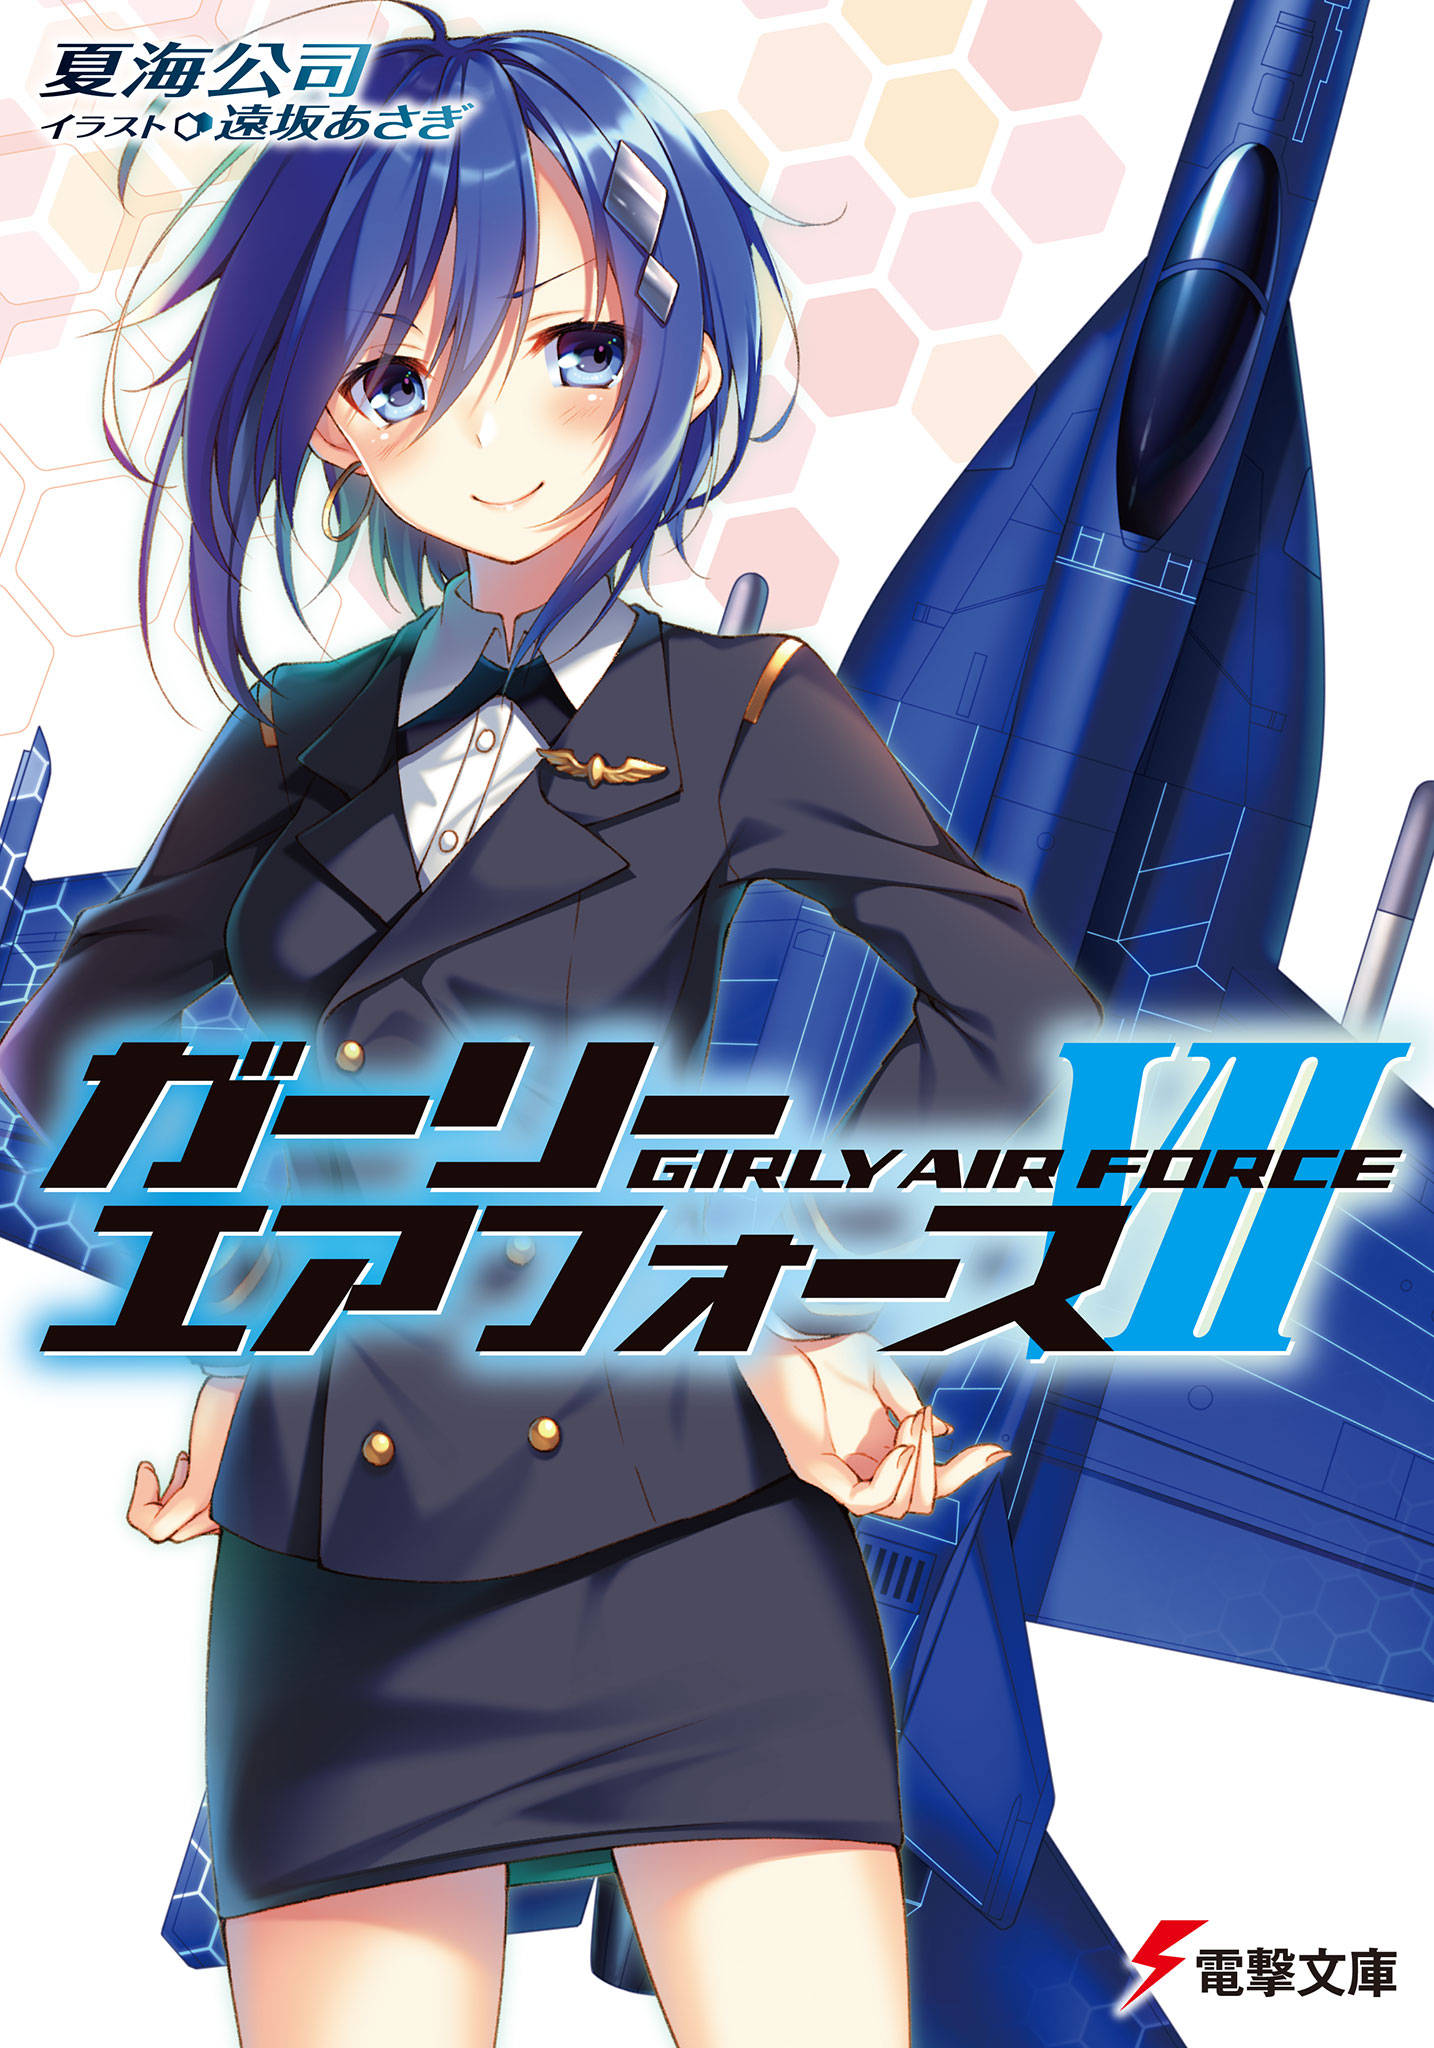 Rhino Girly Air Force Wiki Fandom